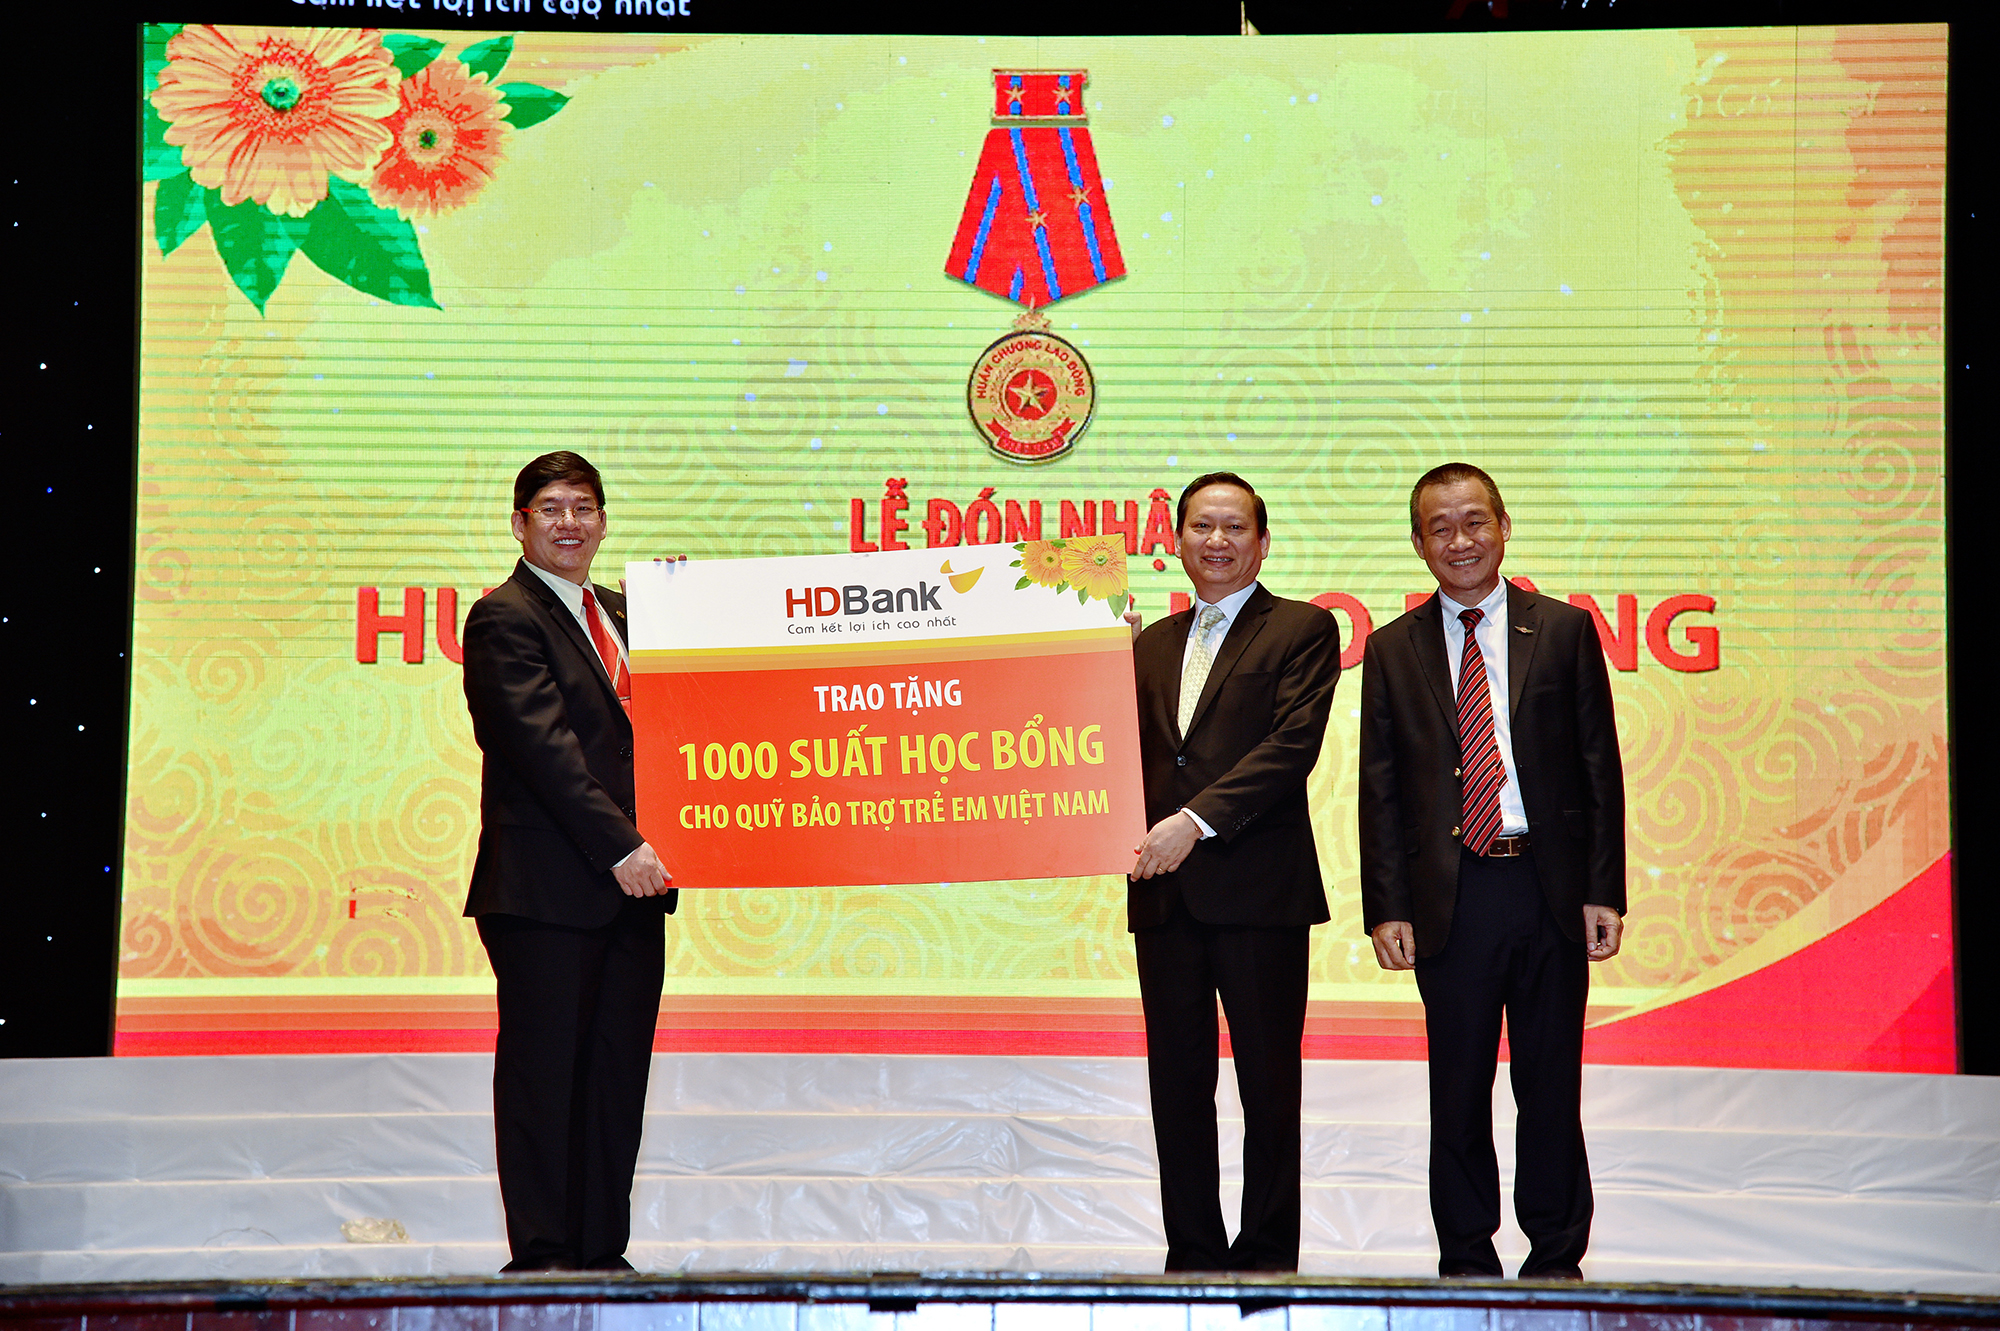 HDBank trao tặng 1, tỷ đồng cho Quỹ Bảo trợ trẻ em em Việt Nam hồi tháng 1/2019. 